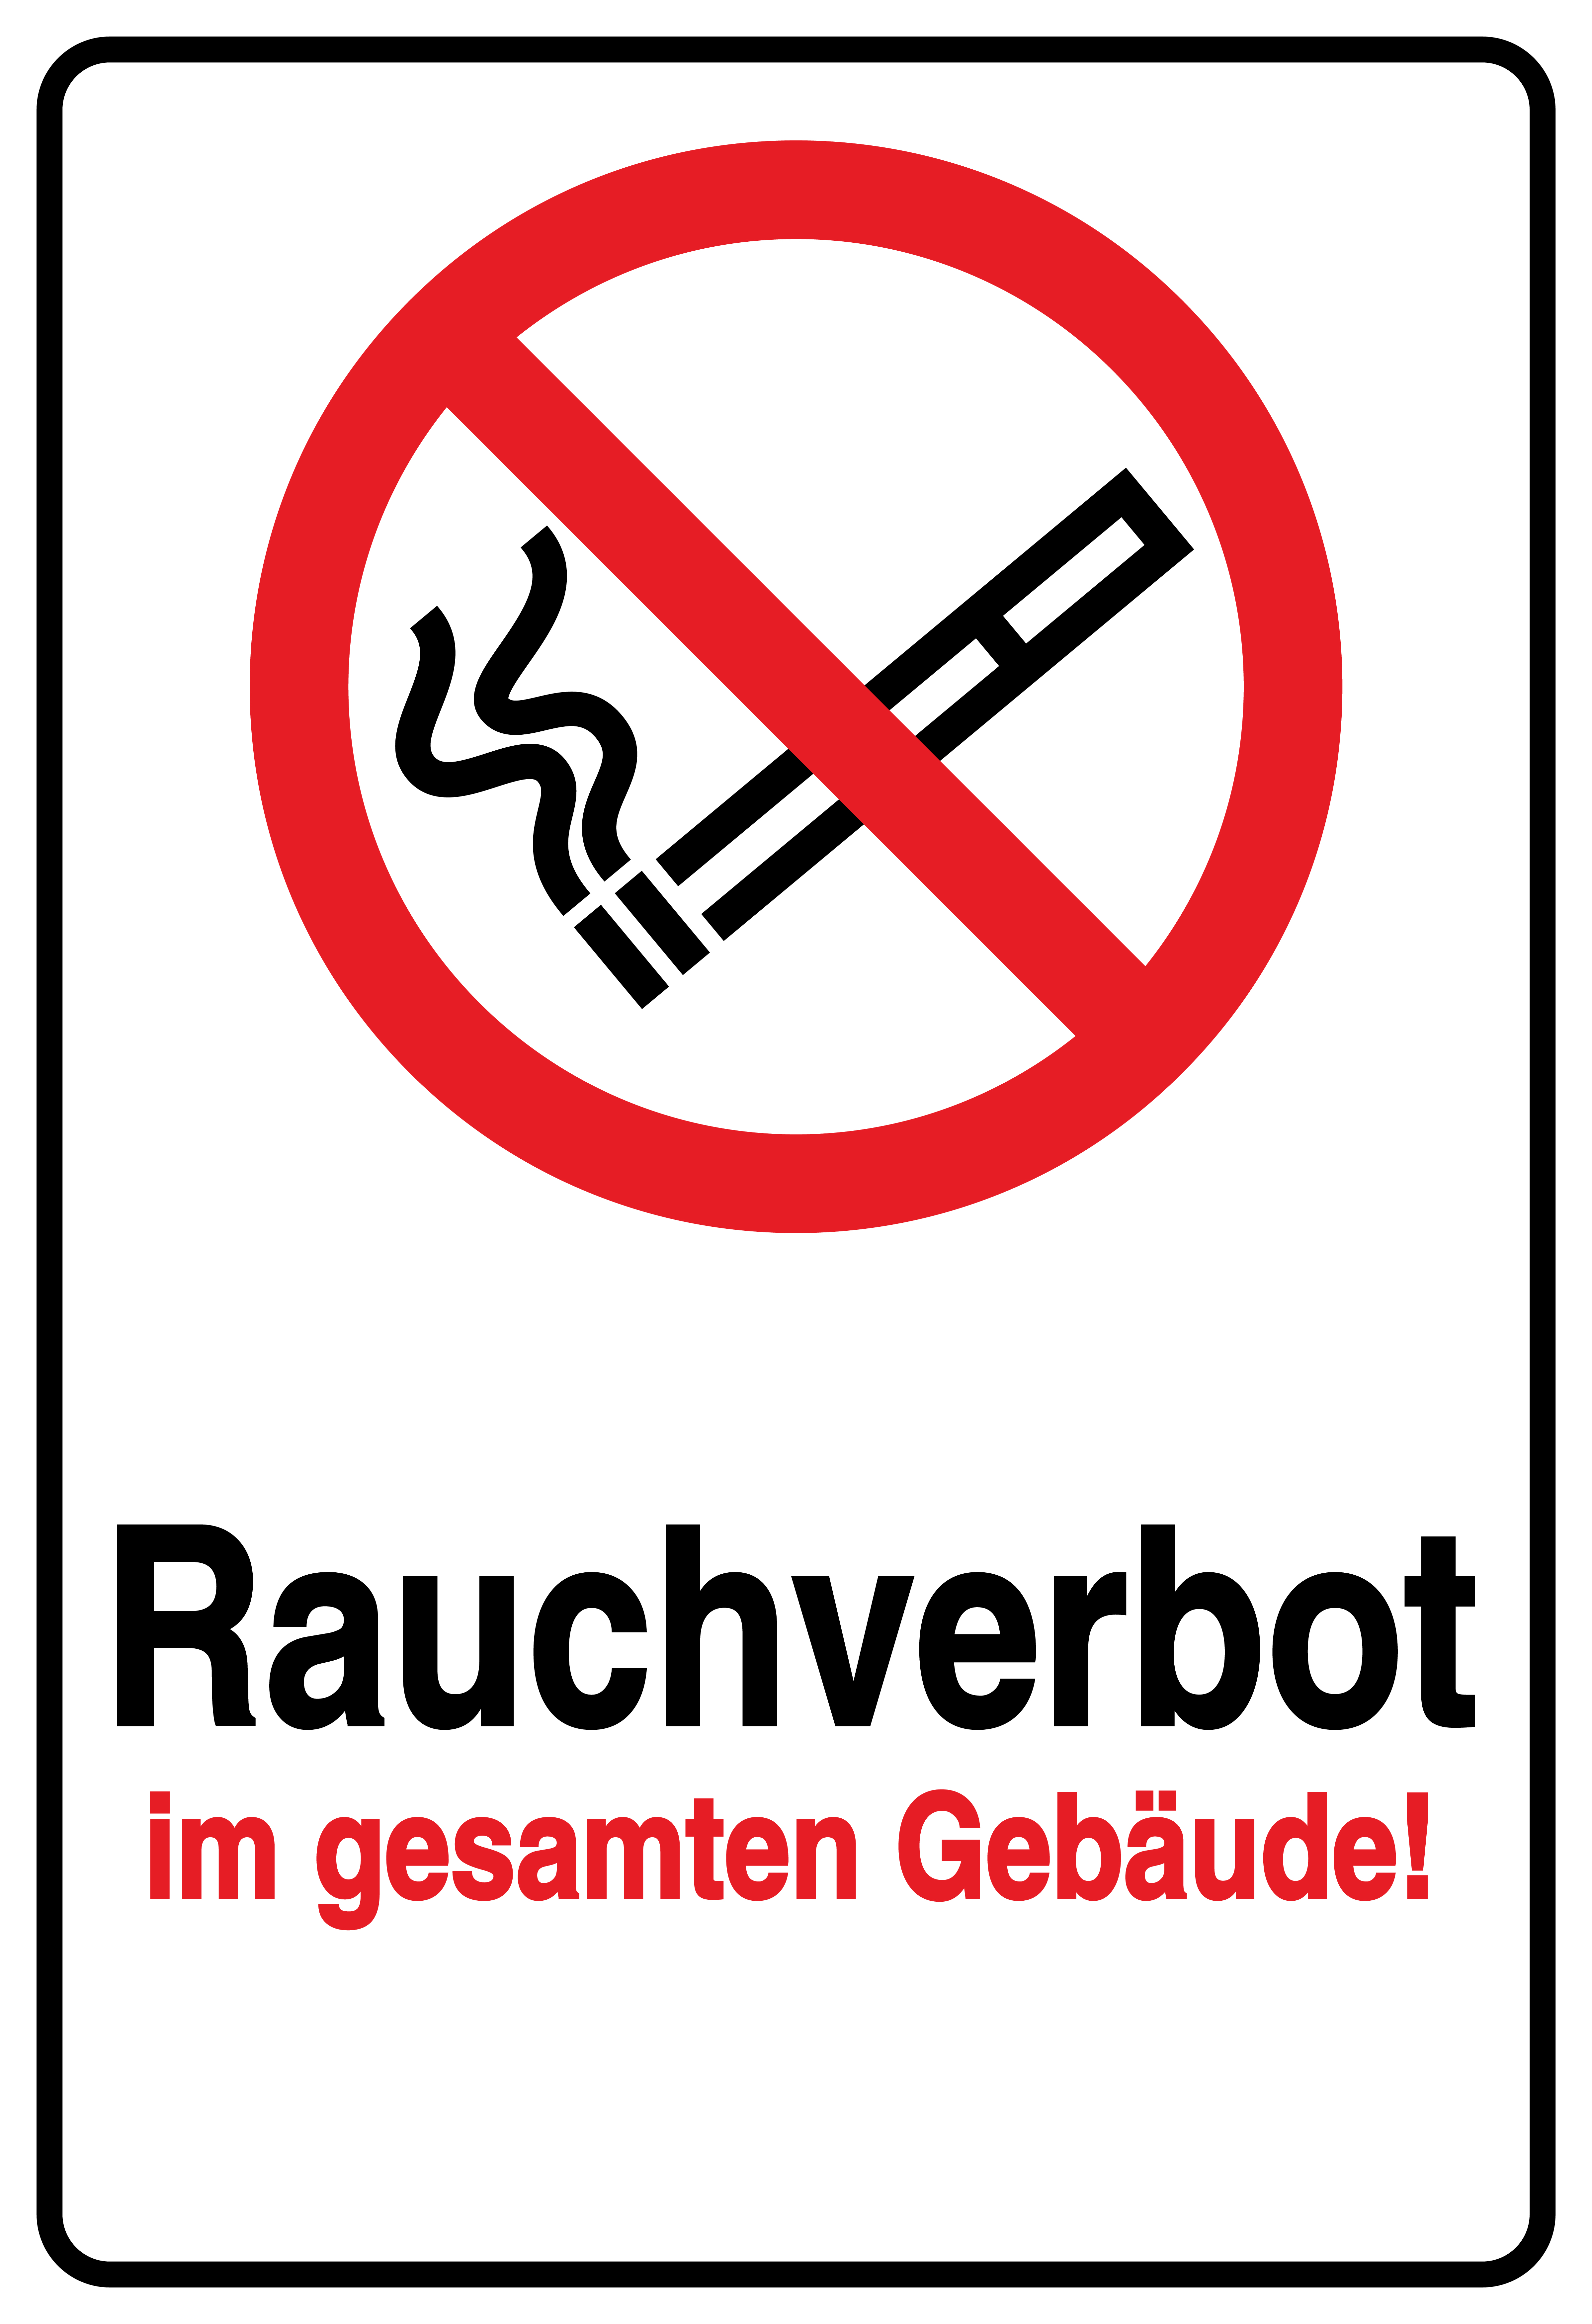 Rauchverbot im gesamten Gebäude 20x30 cm Rauchen verboten Aufkleber